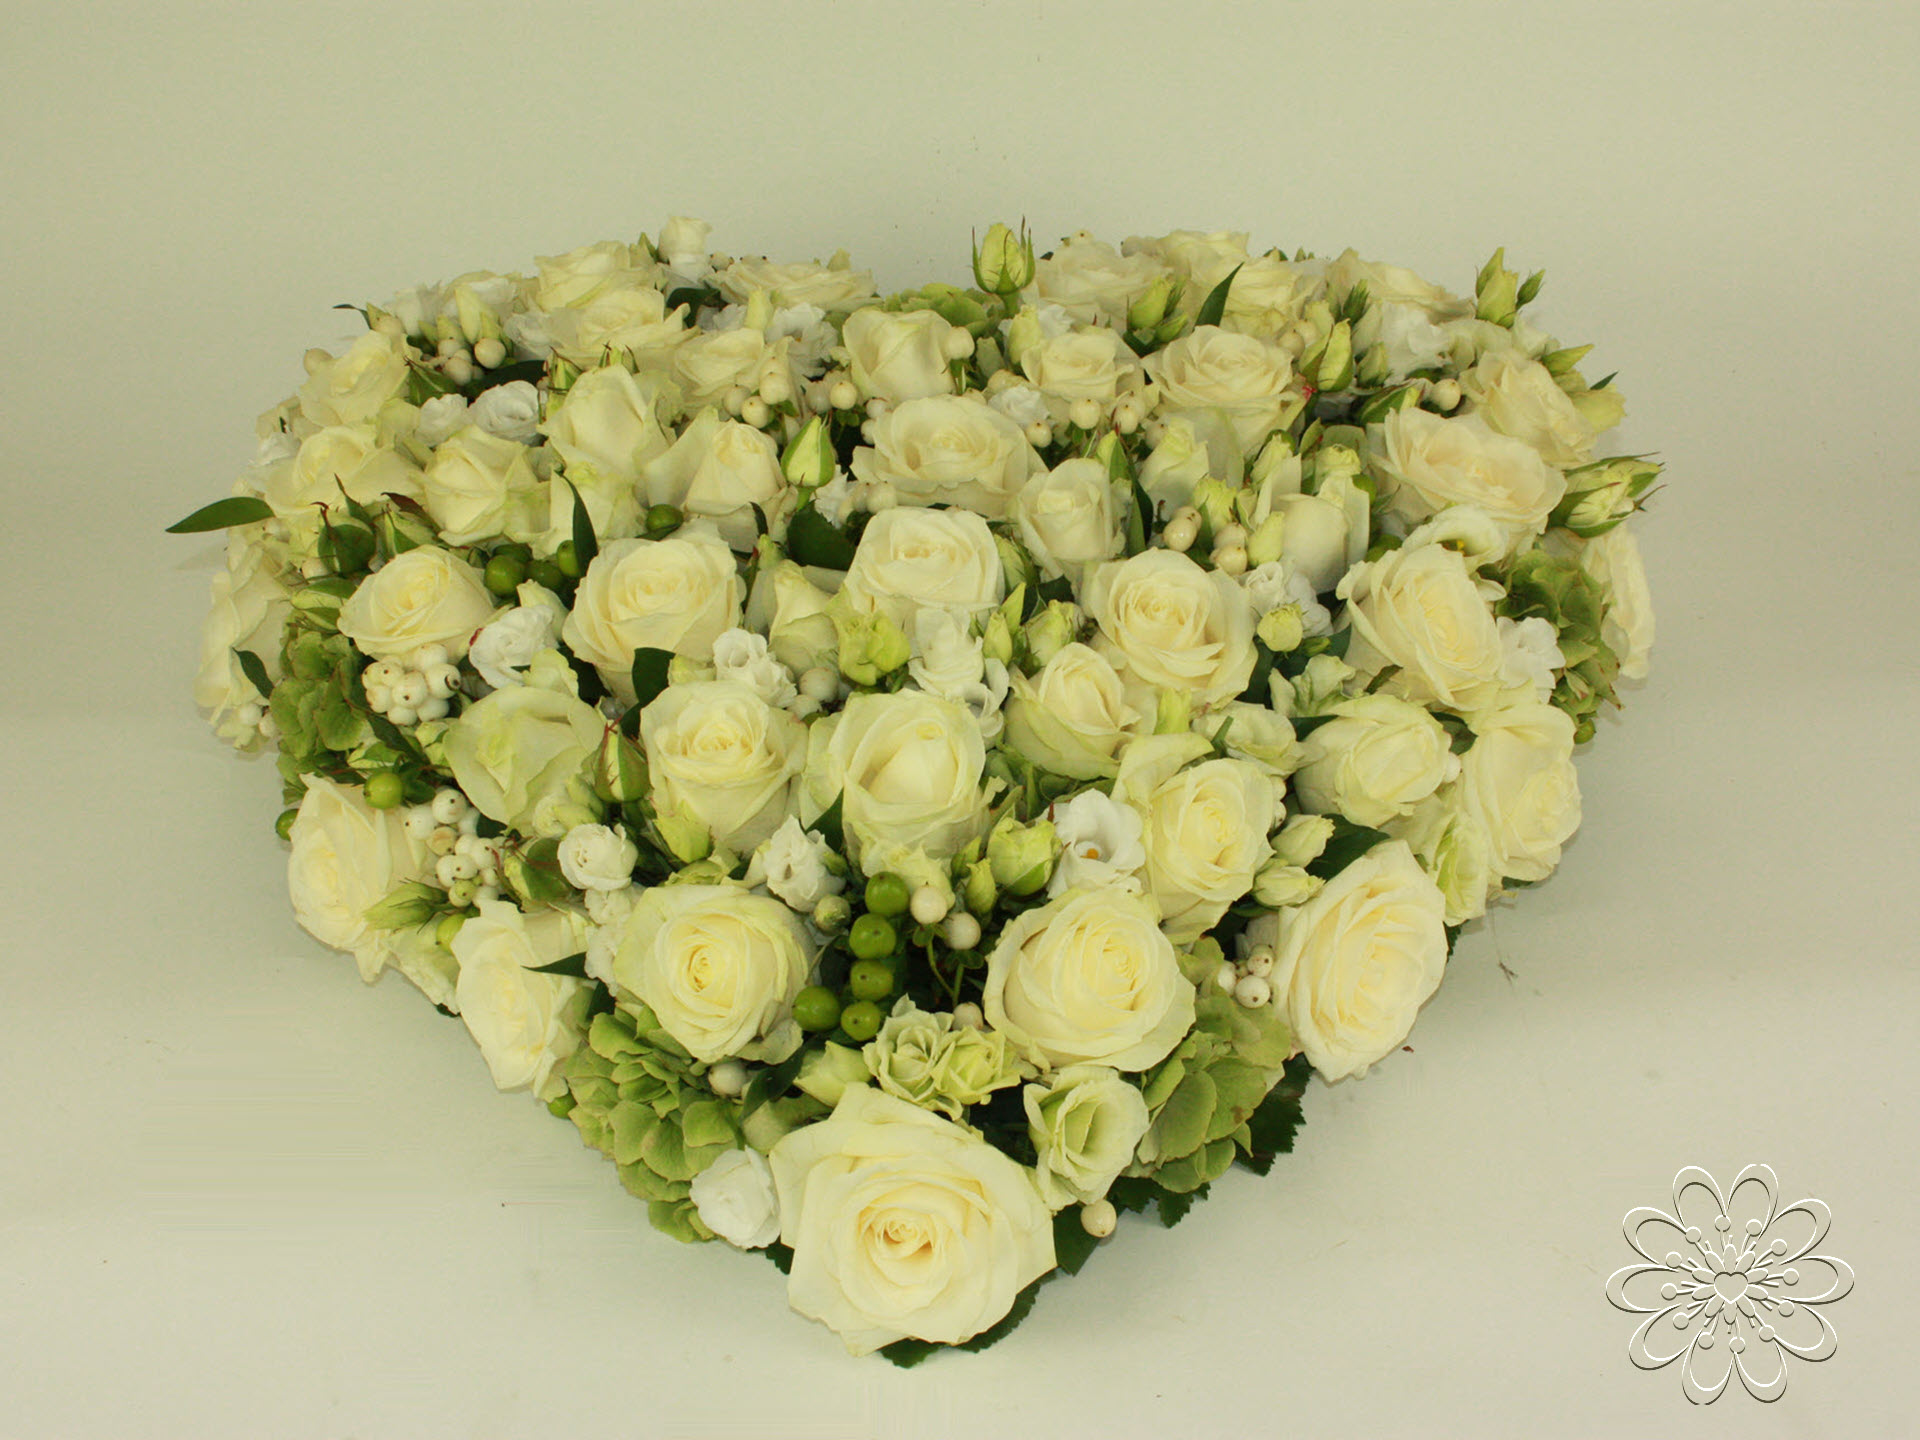 Bloemsierkunst Groeneveld bloemen uitvaart hartvorm gesloten met witte rozen